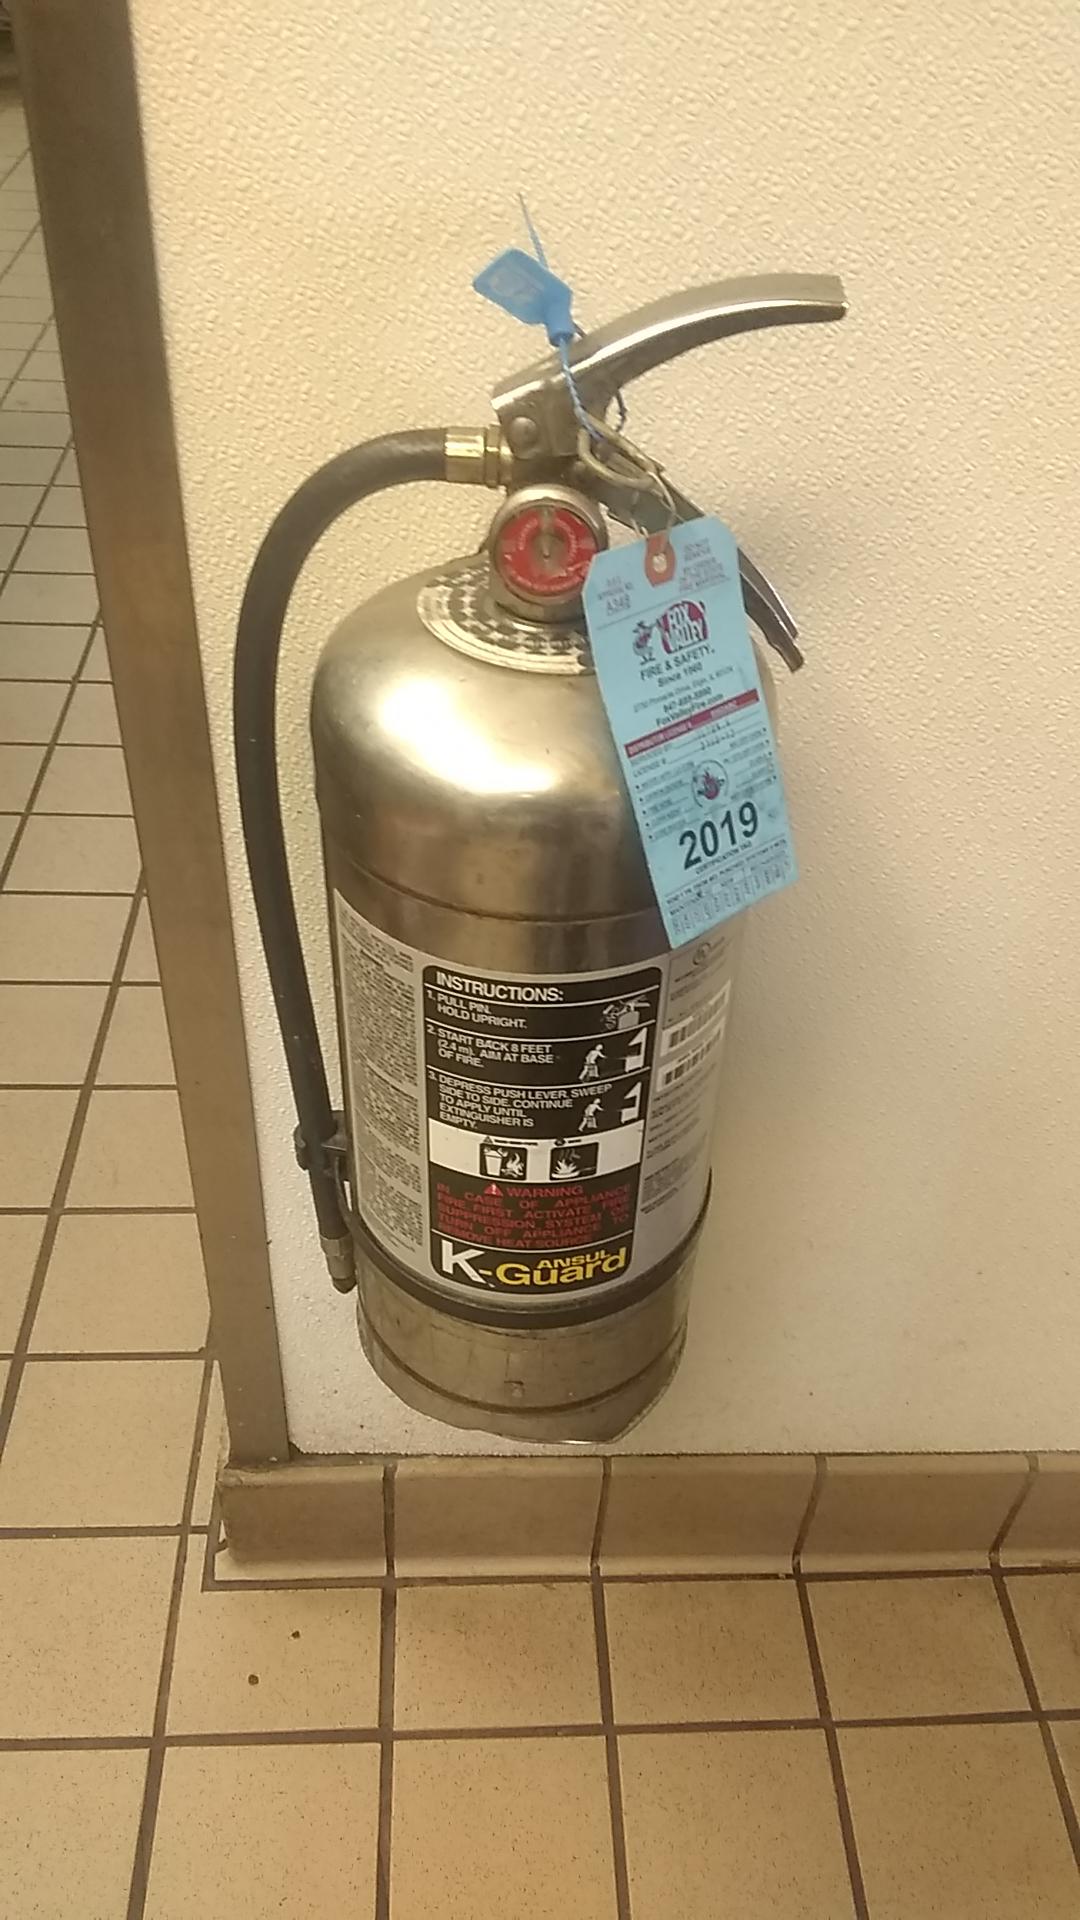 Wet fire suppression extinguisher